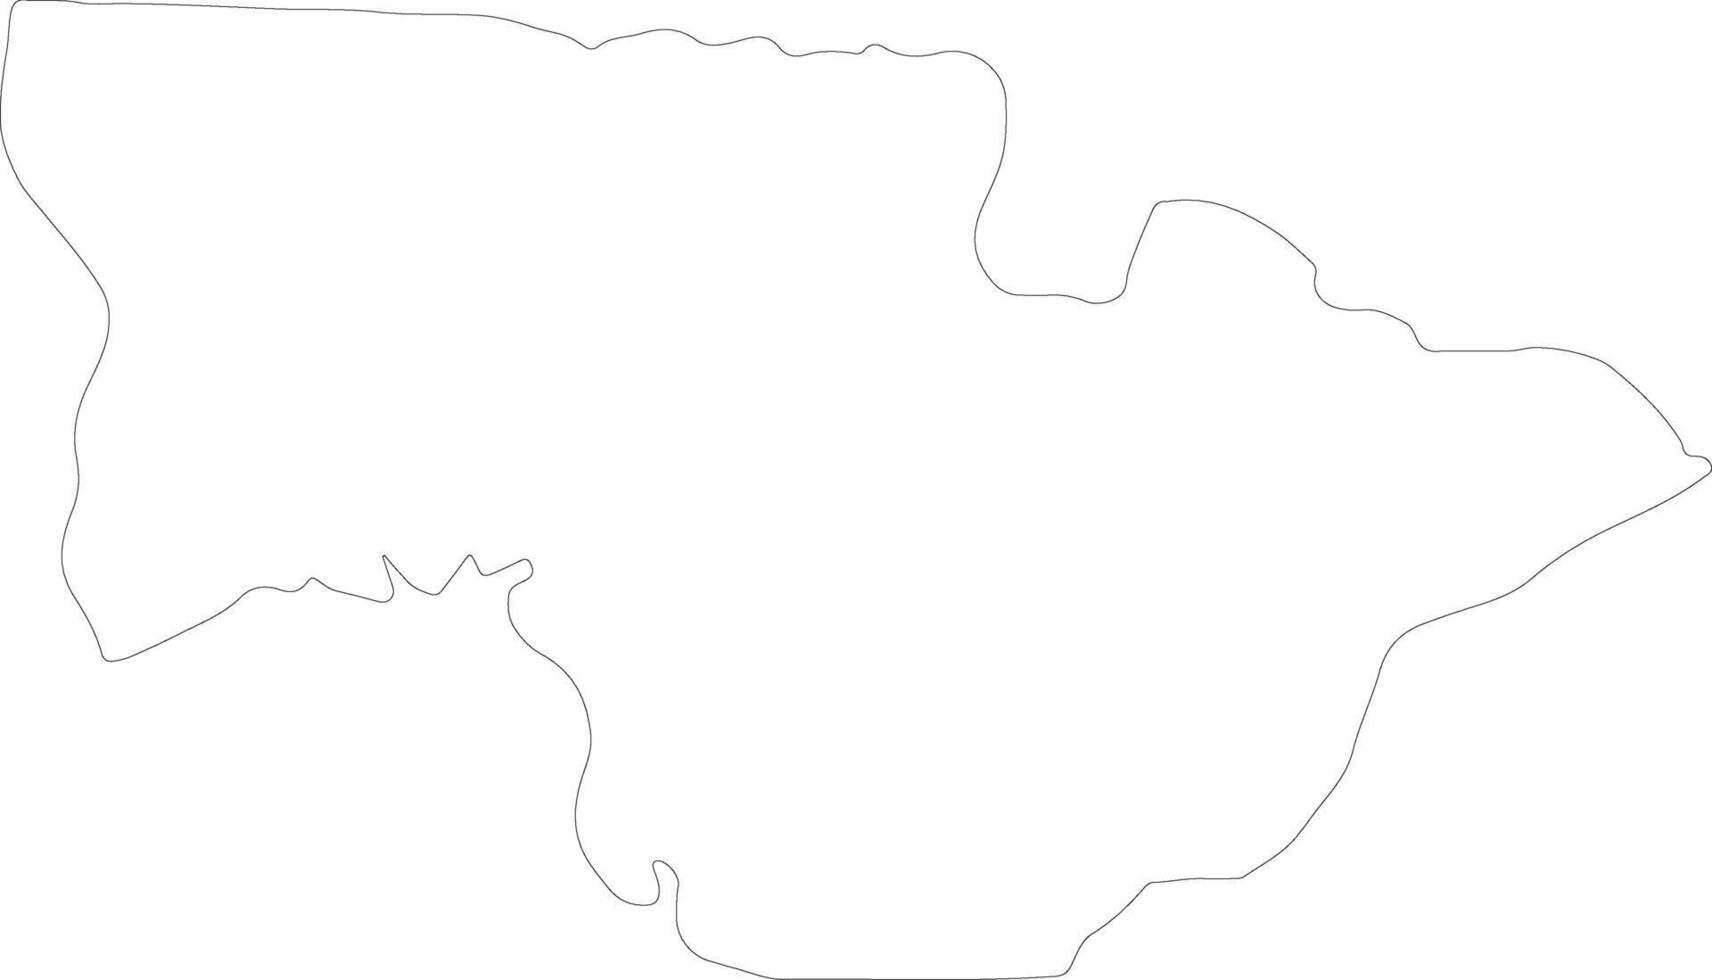 koundara guinea översikt Karta vektor